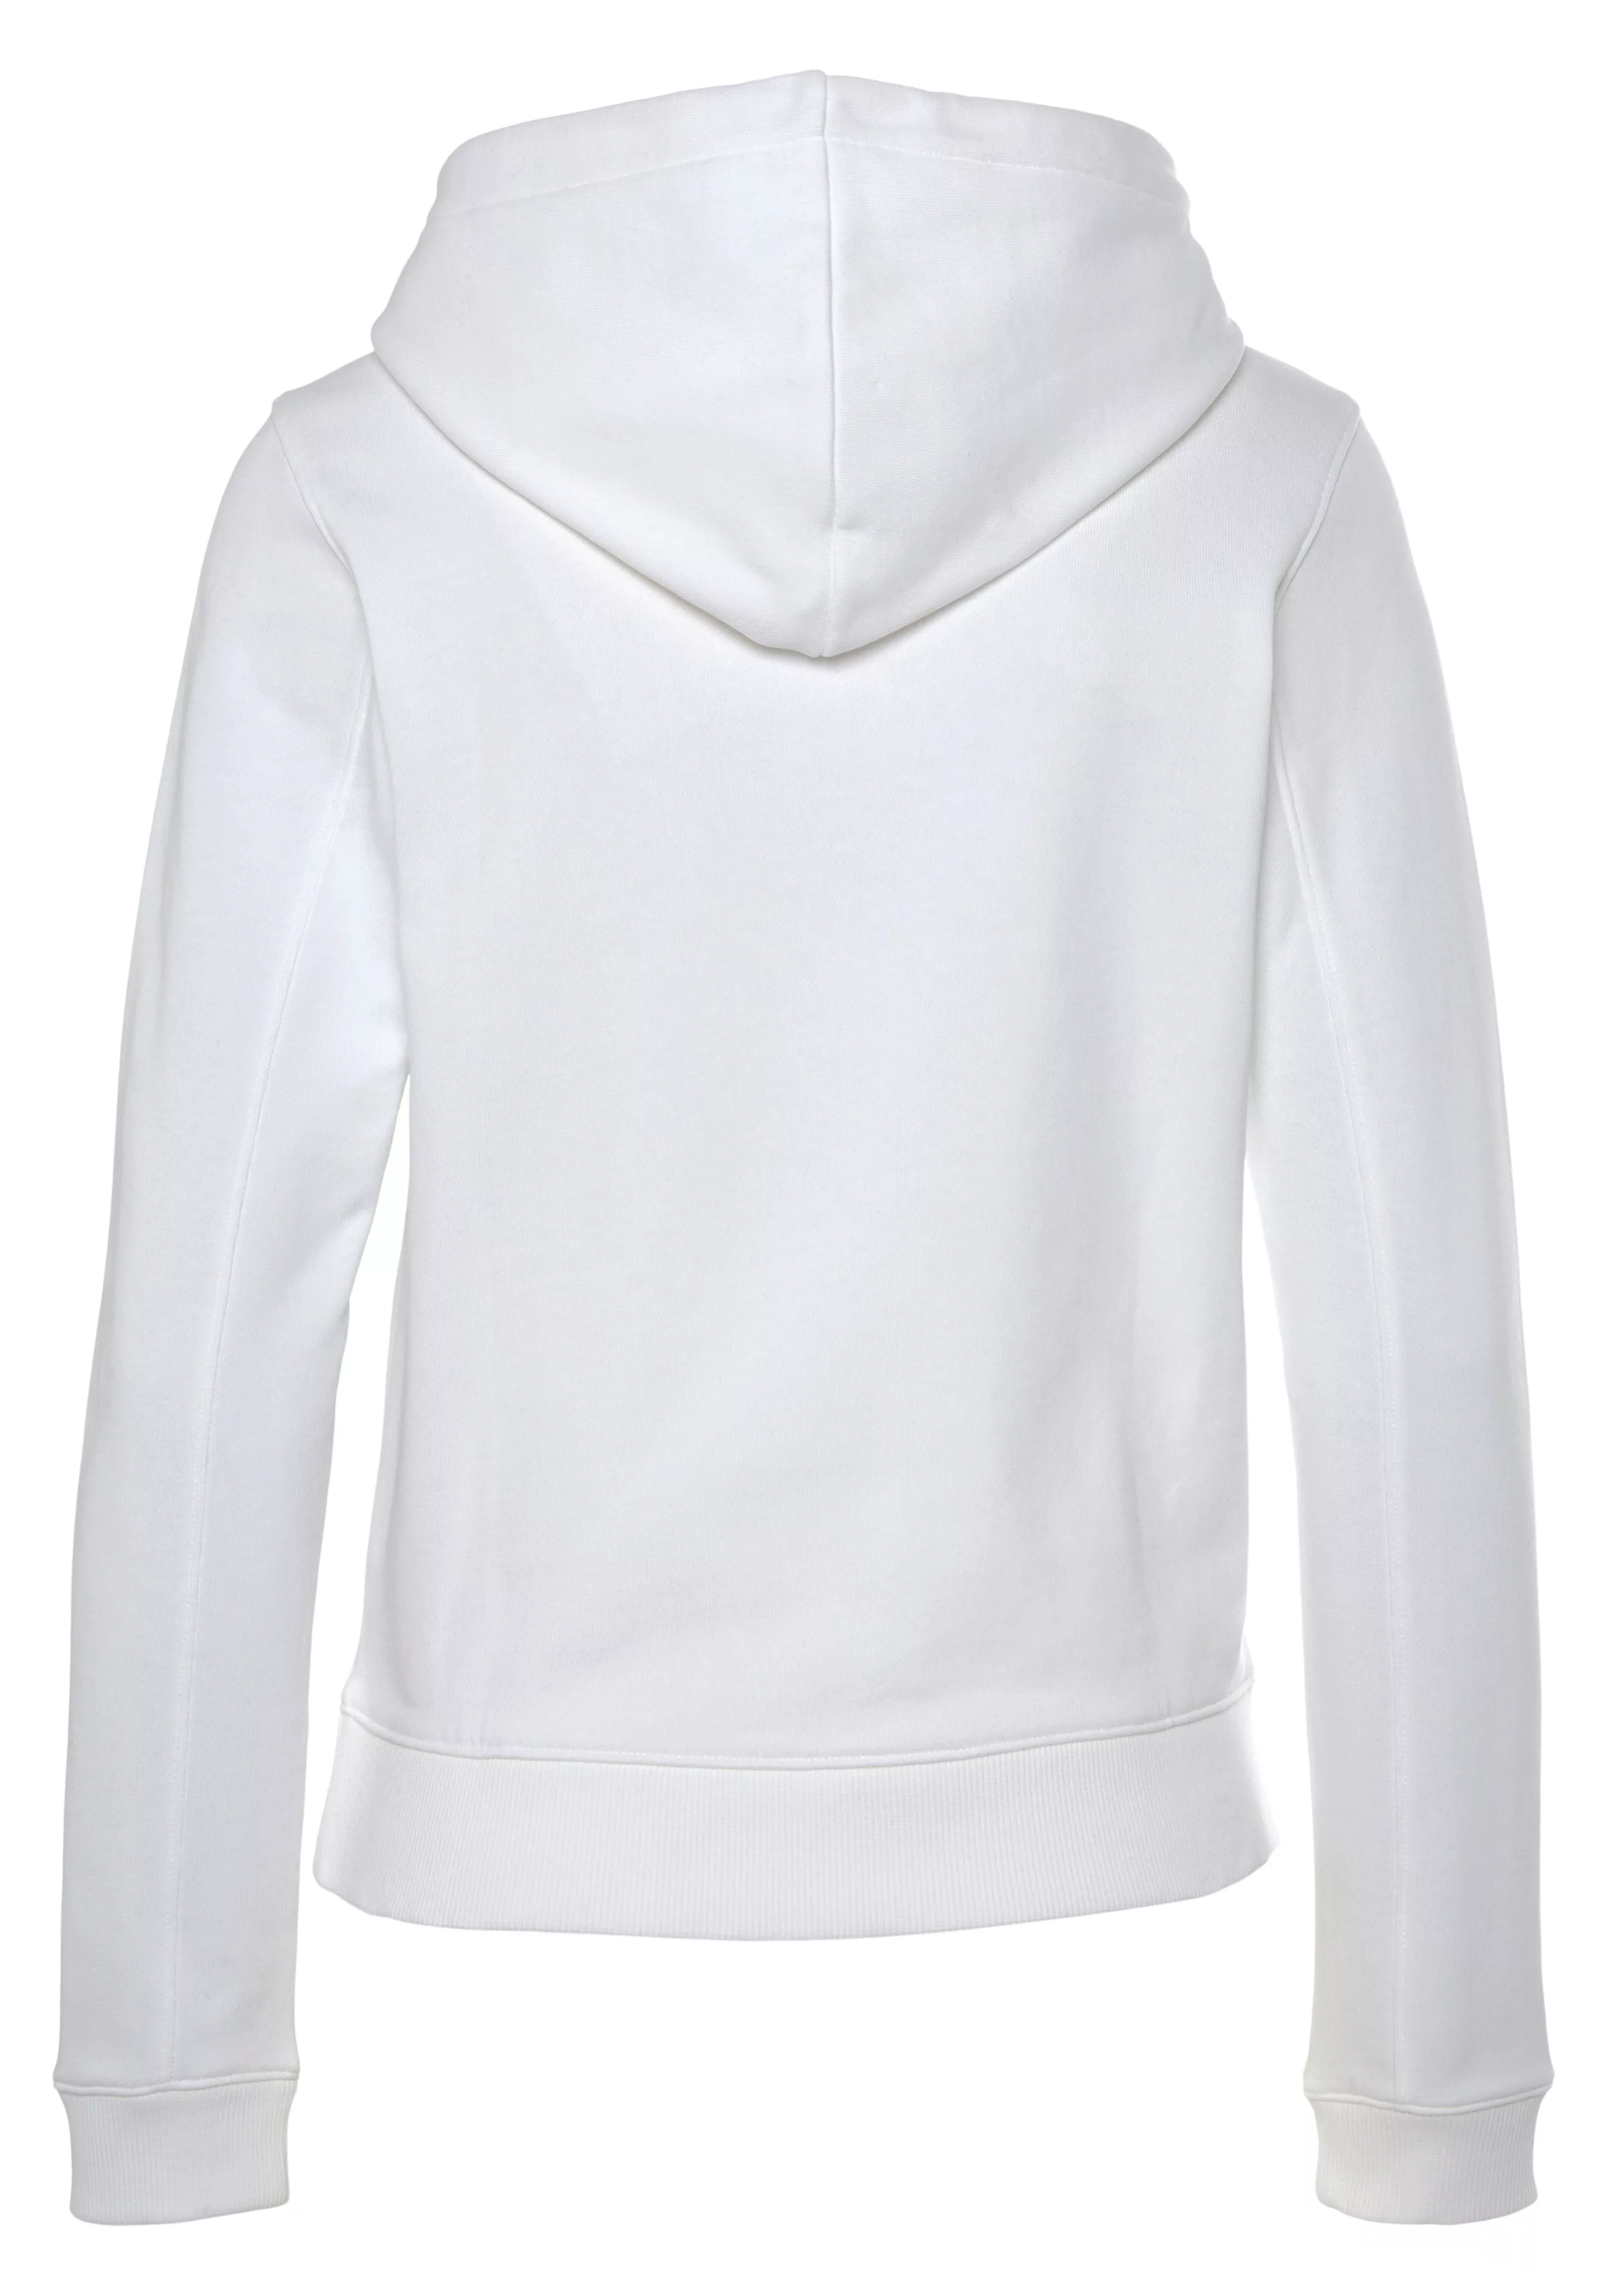 Calvin Klein Jeans Kapuzensweatshirt "CORE INSTITUTIONAL LOGO HOODIE" günstig online kaufen